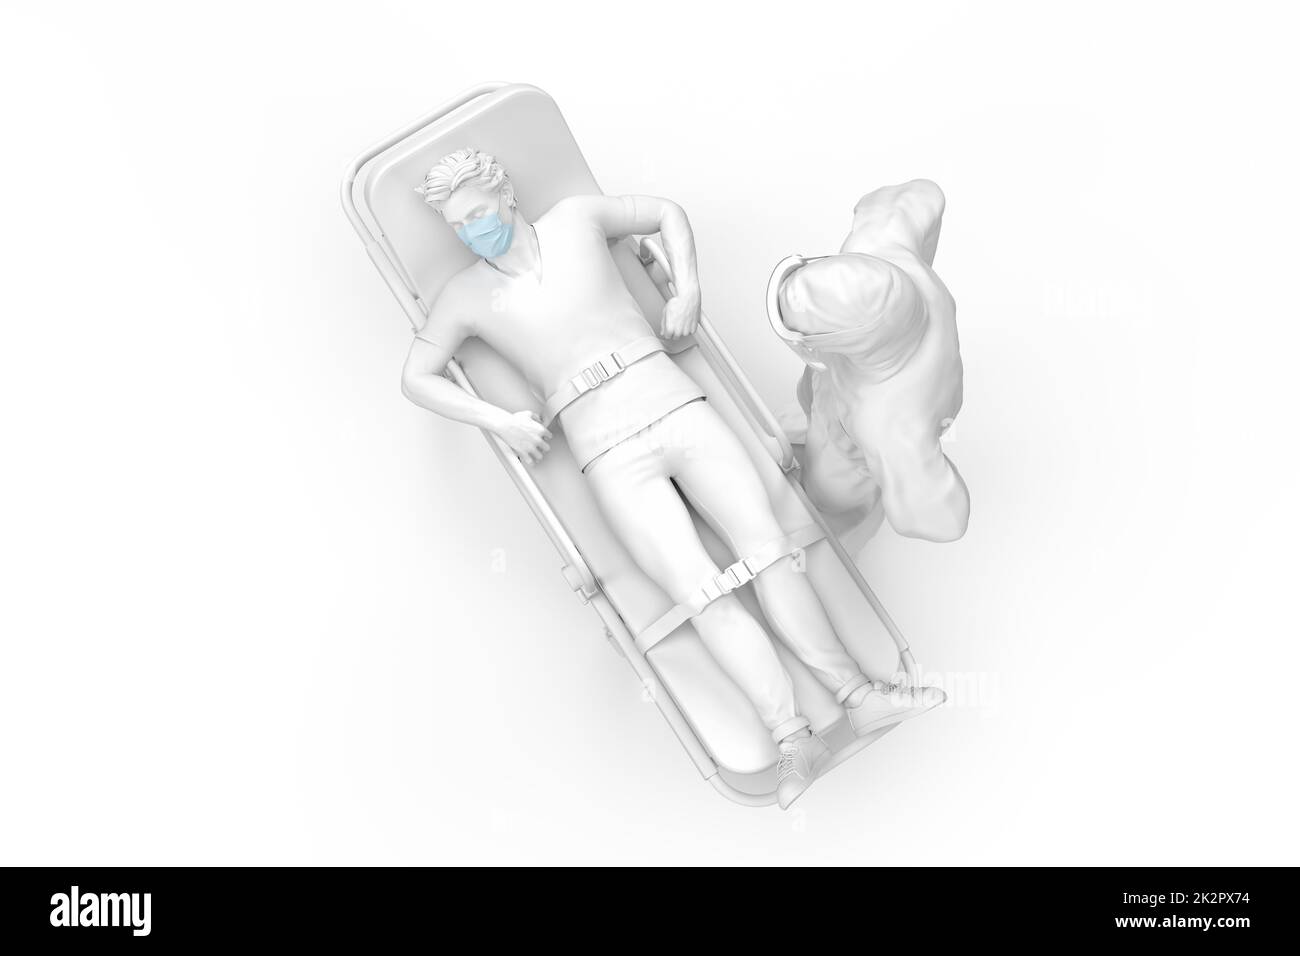 Ansicht des Arztes in Schutzkleidung und des kranken Patienten auf einer Liege von oben. 3D-Illustration Stockfoto